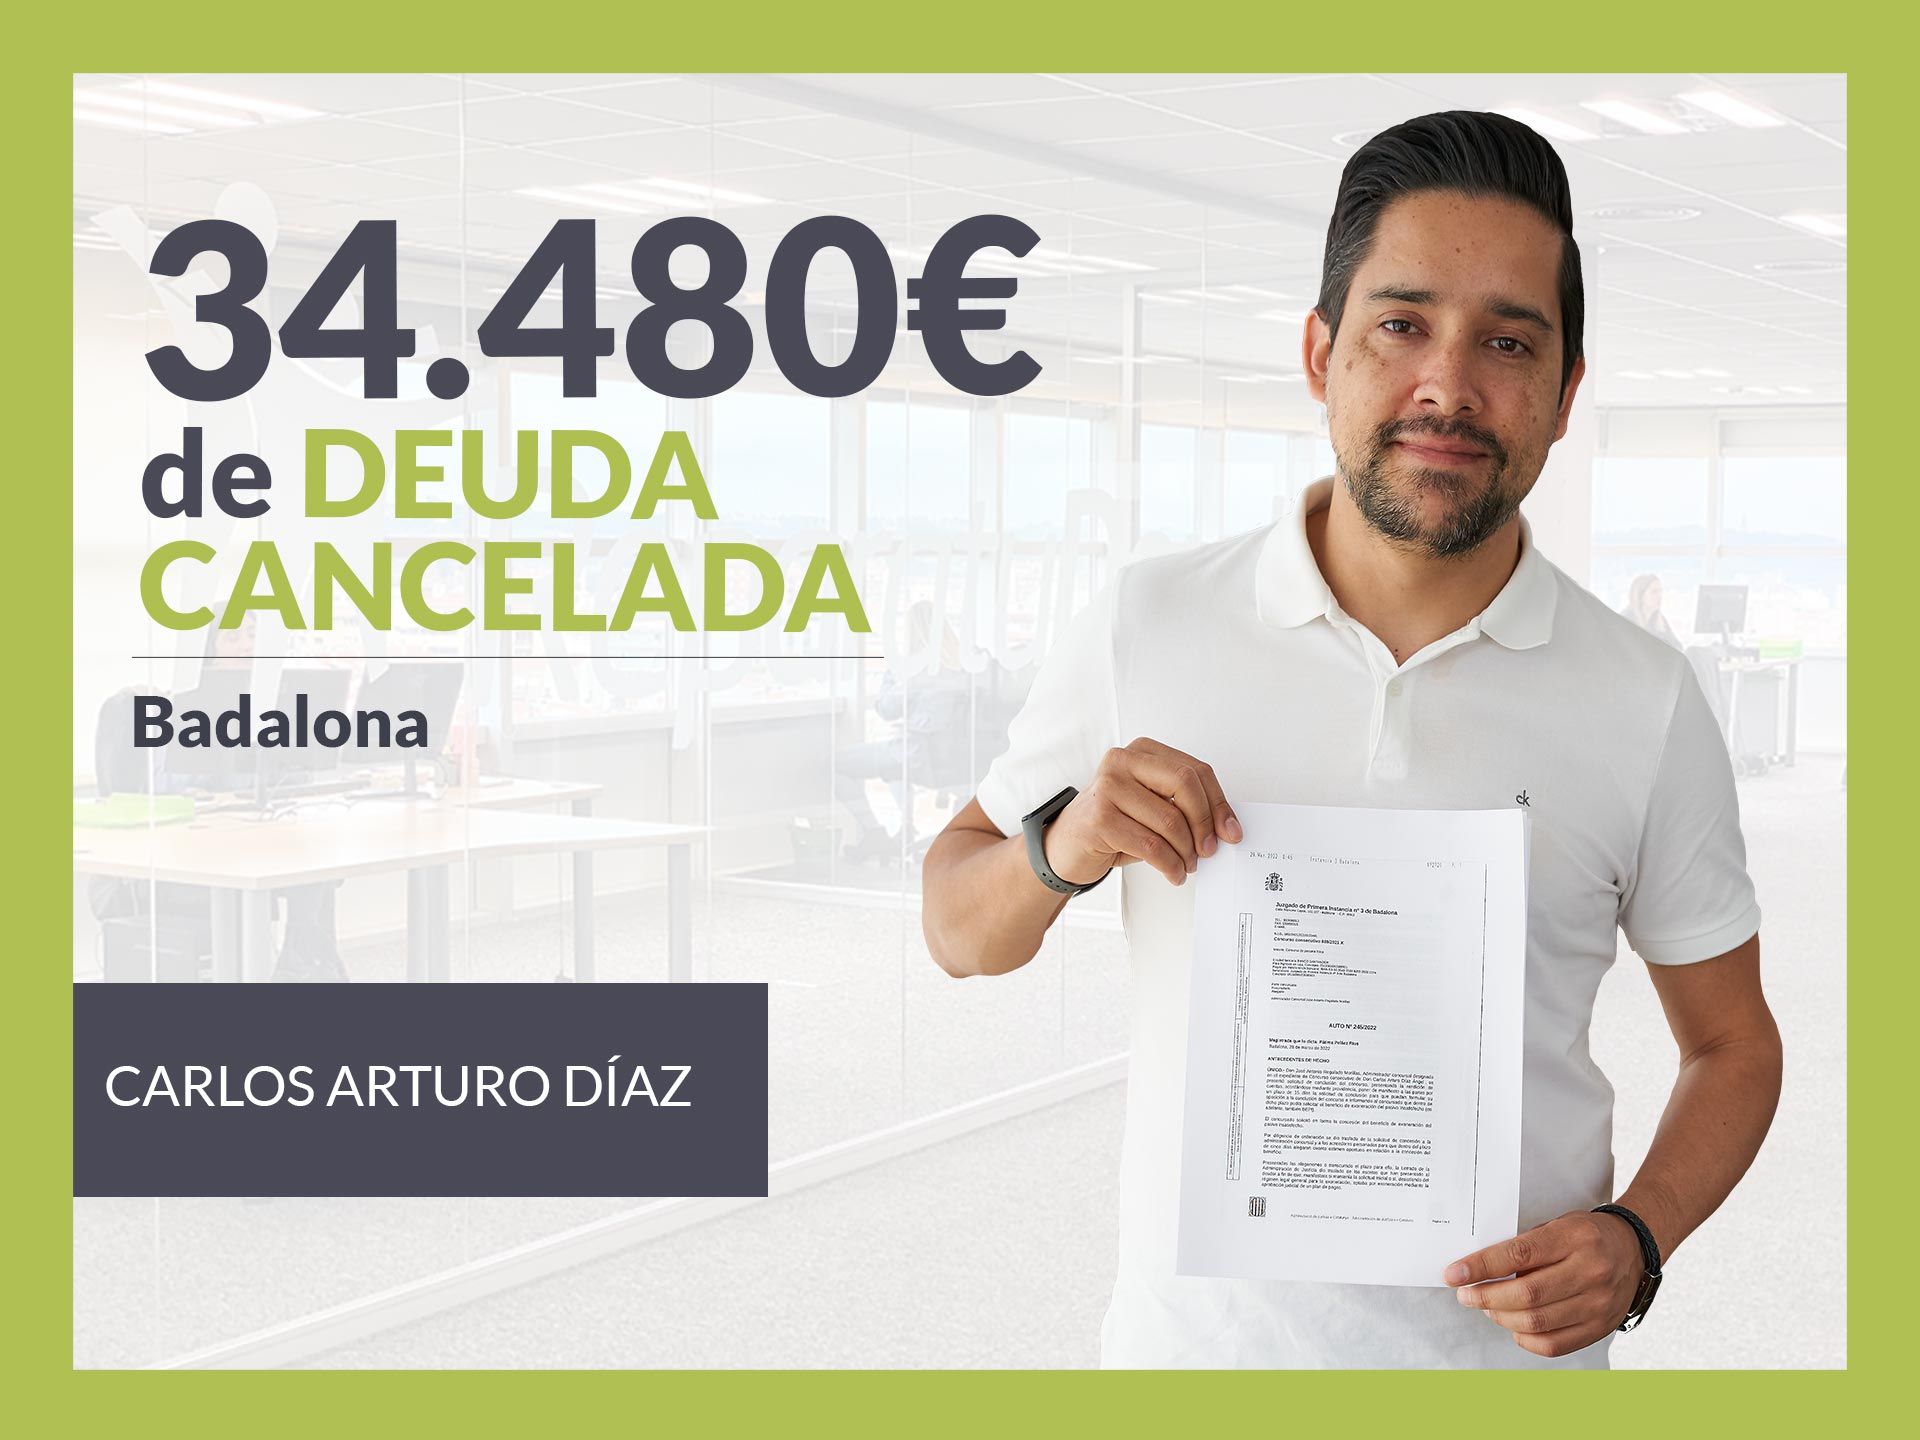 Repara tu Deuda Abogados cancela 34.480? en Badalona (Catalunya) con la Ley de Segunda Oportunidad